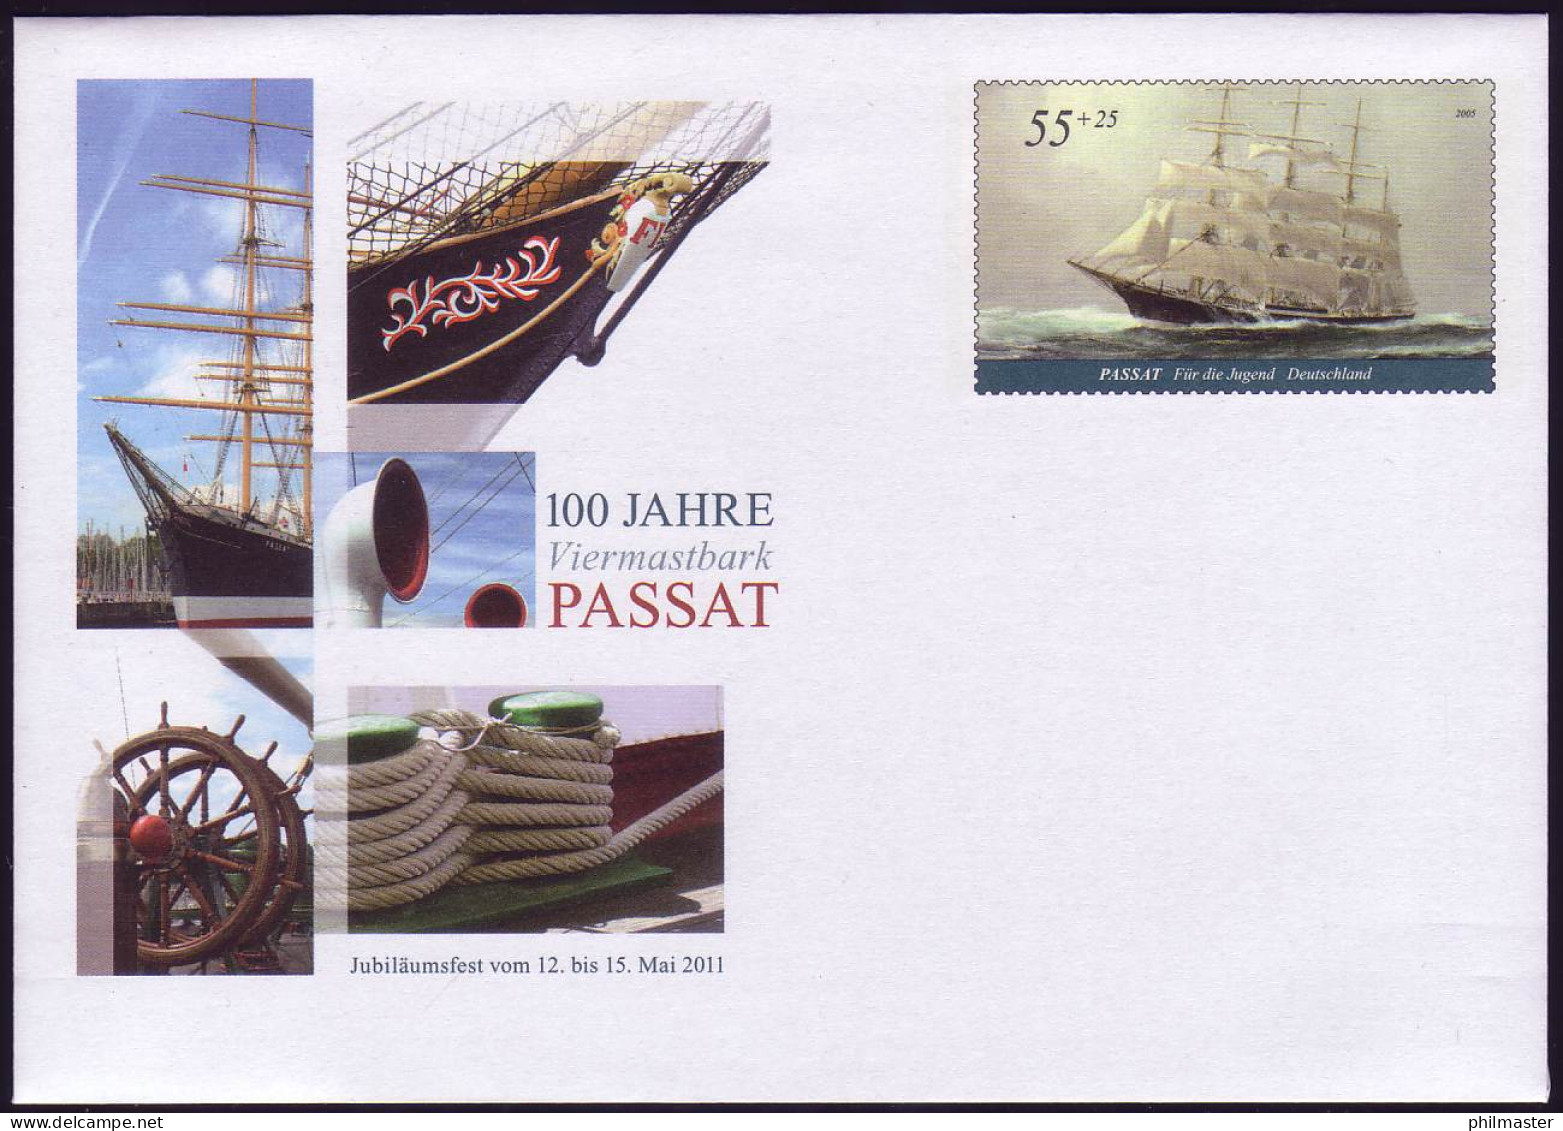 USo 237 100 Jahre Großsegler Viermastbark Passat 2011, Postfrisch - Covers - Mint